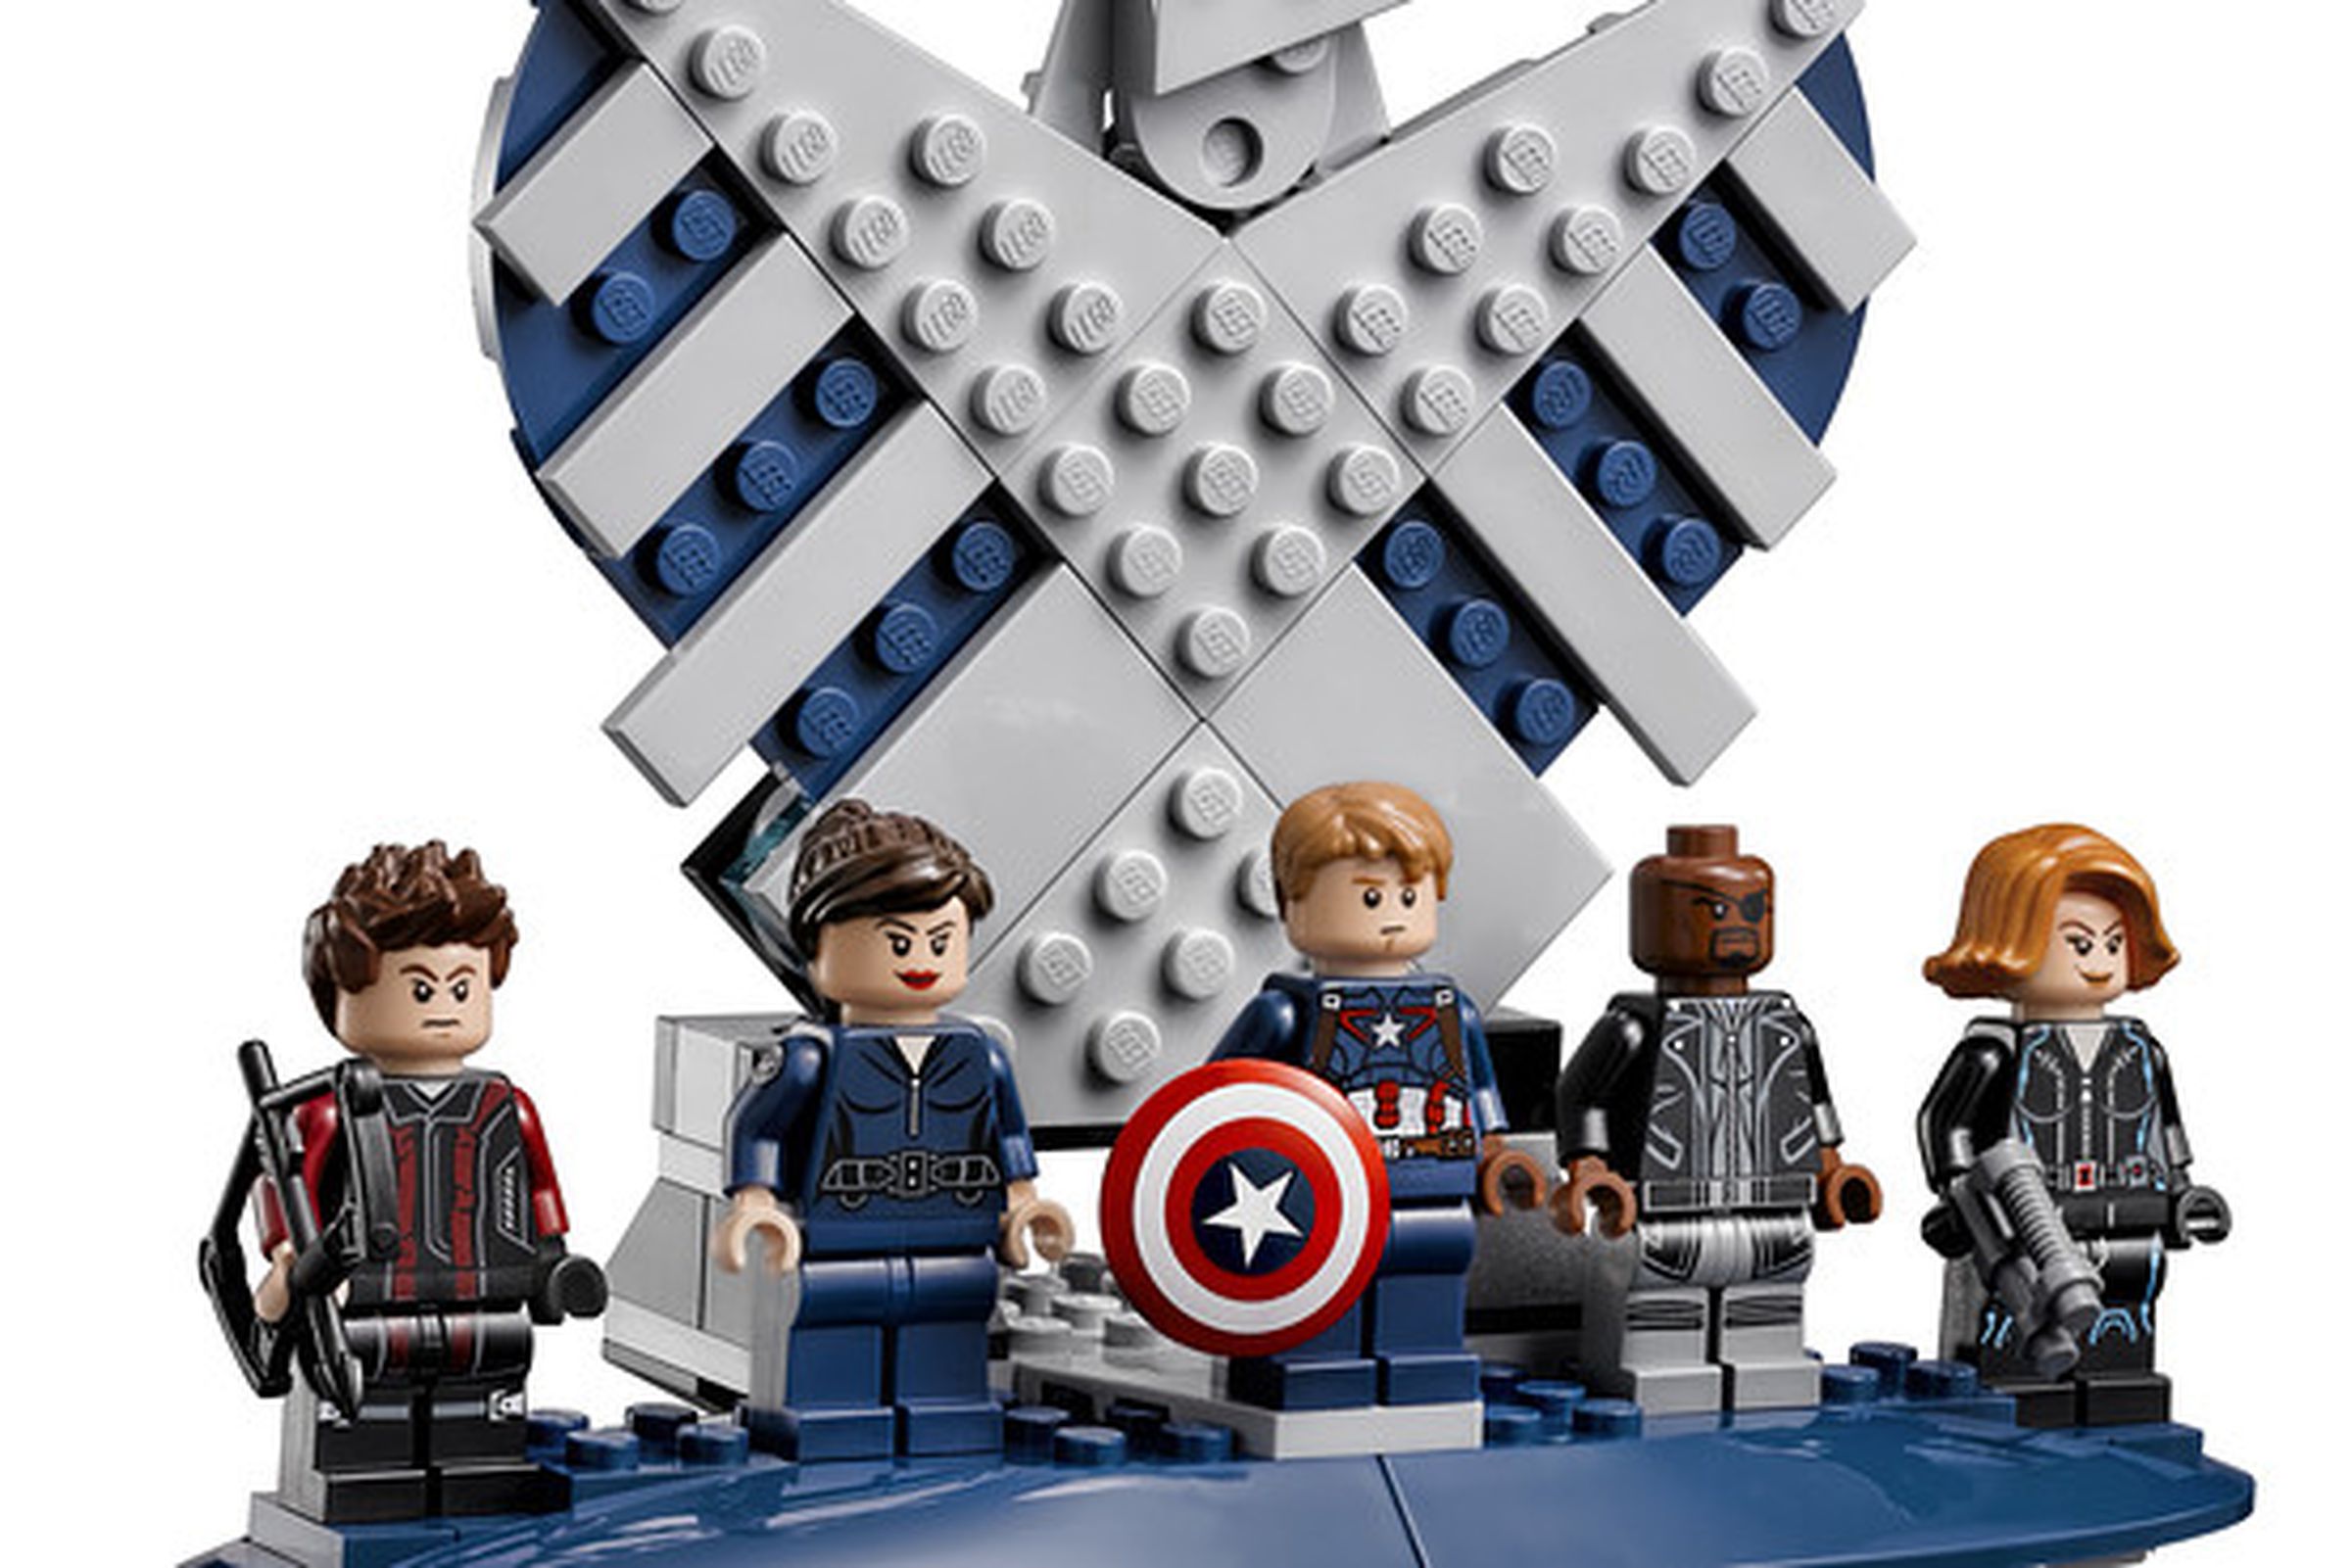 Lego Avengers SHIELD set